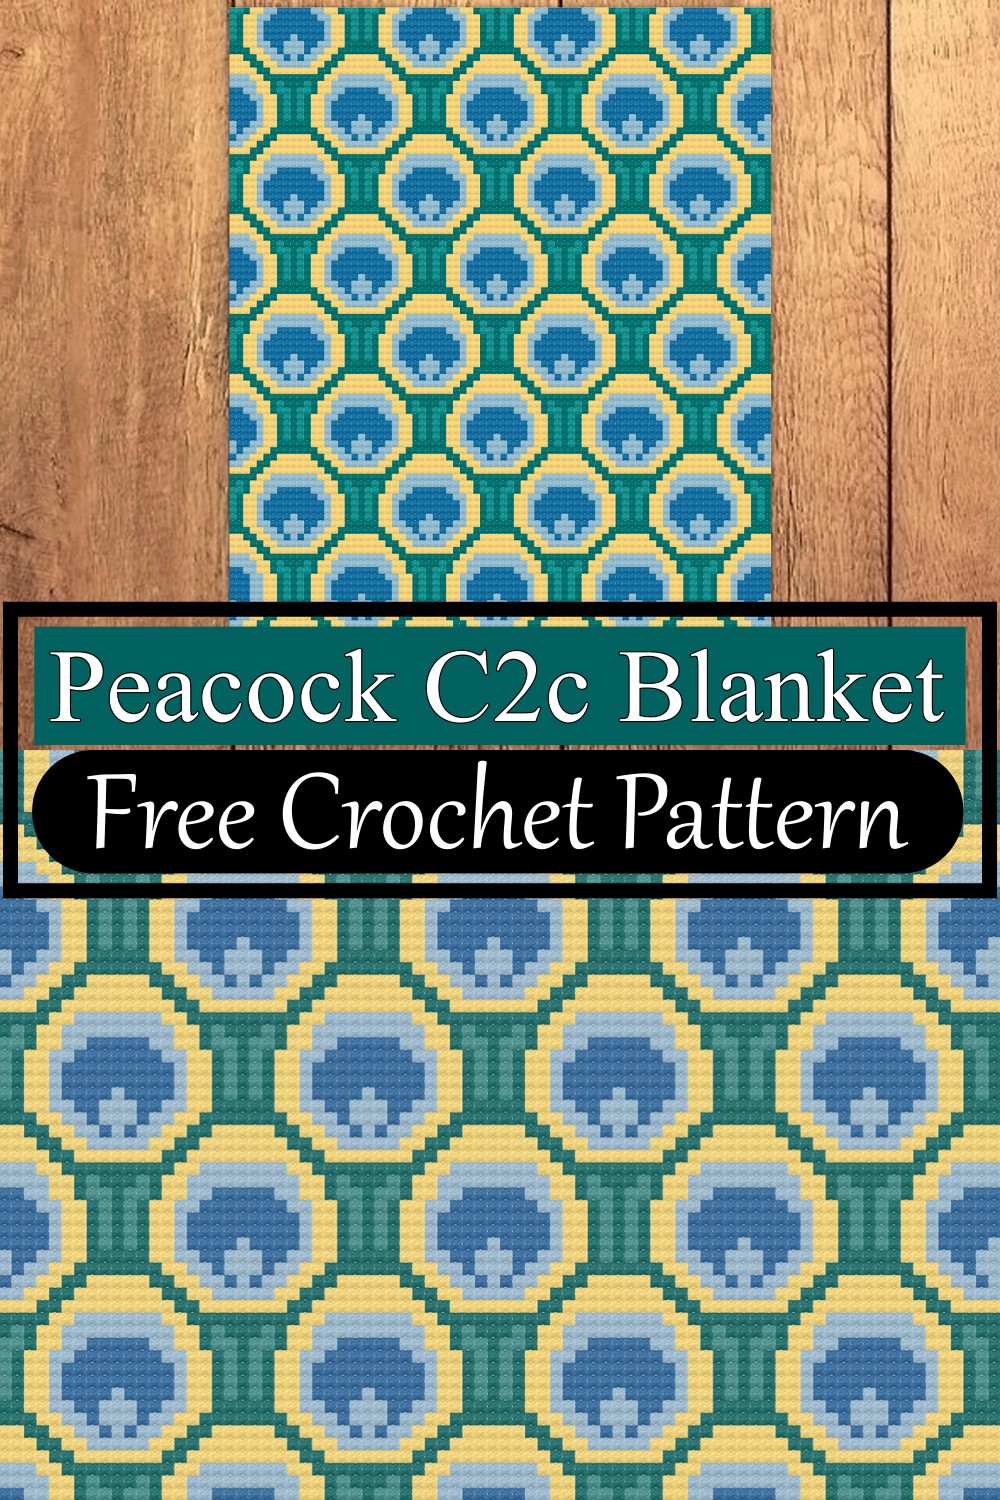 Peacock C2c Blanket